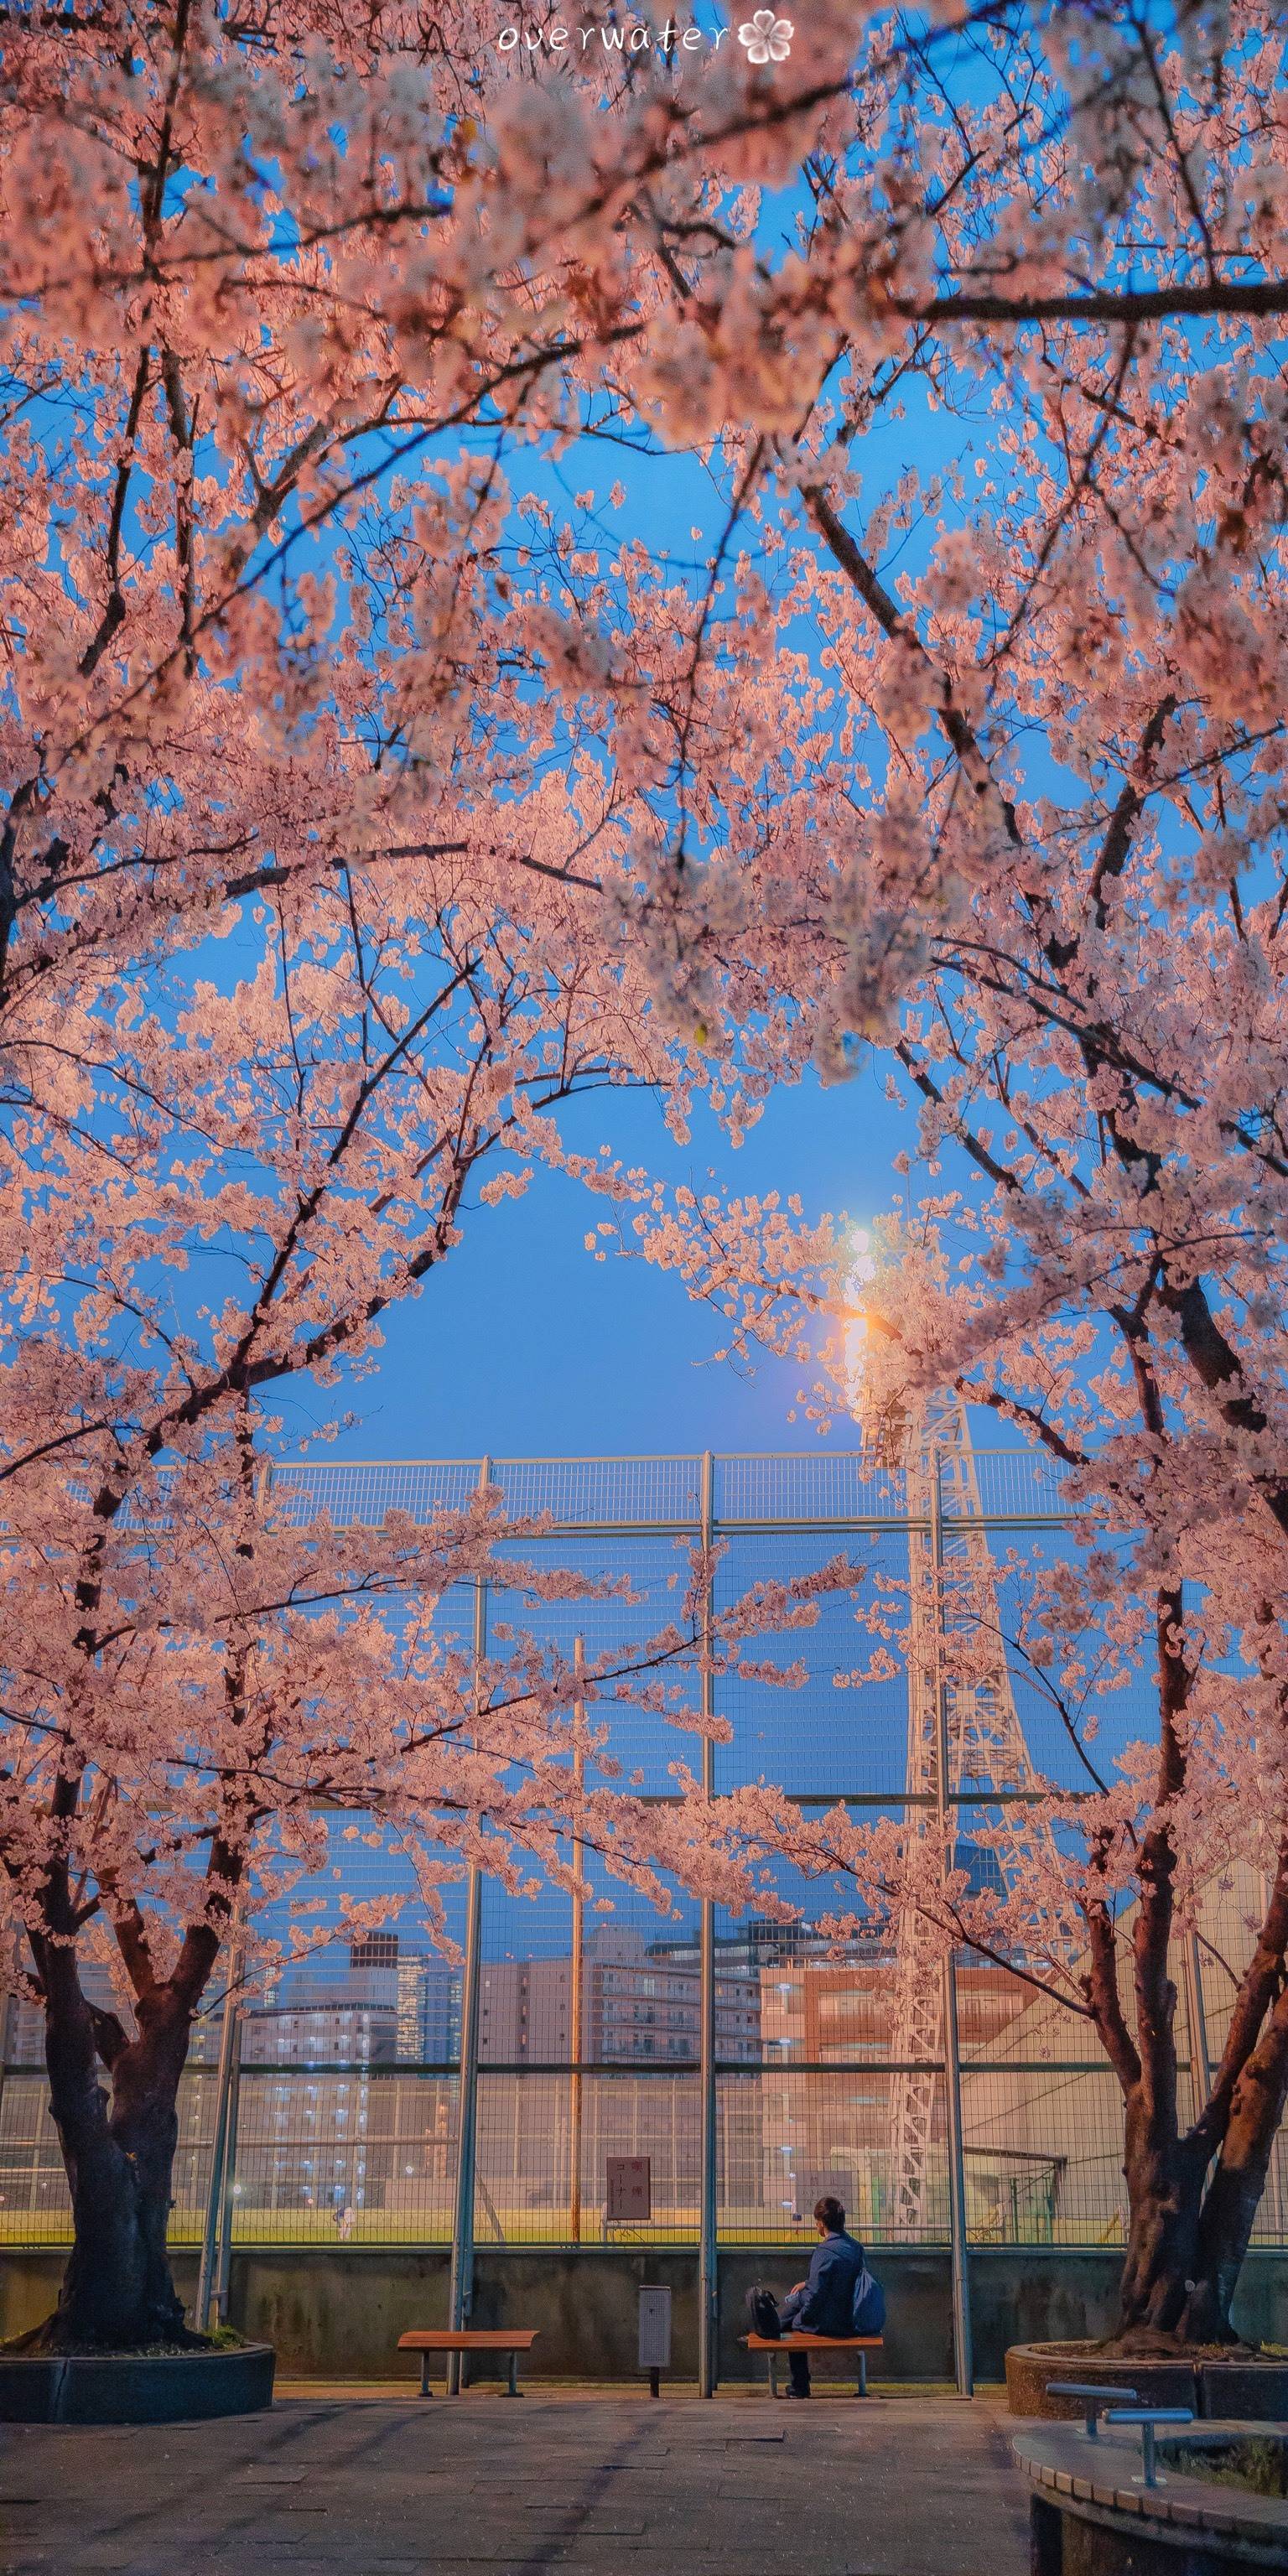 樱花背景图微信图片